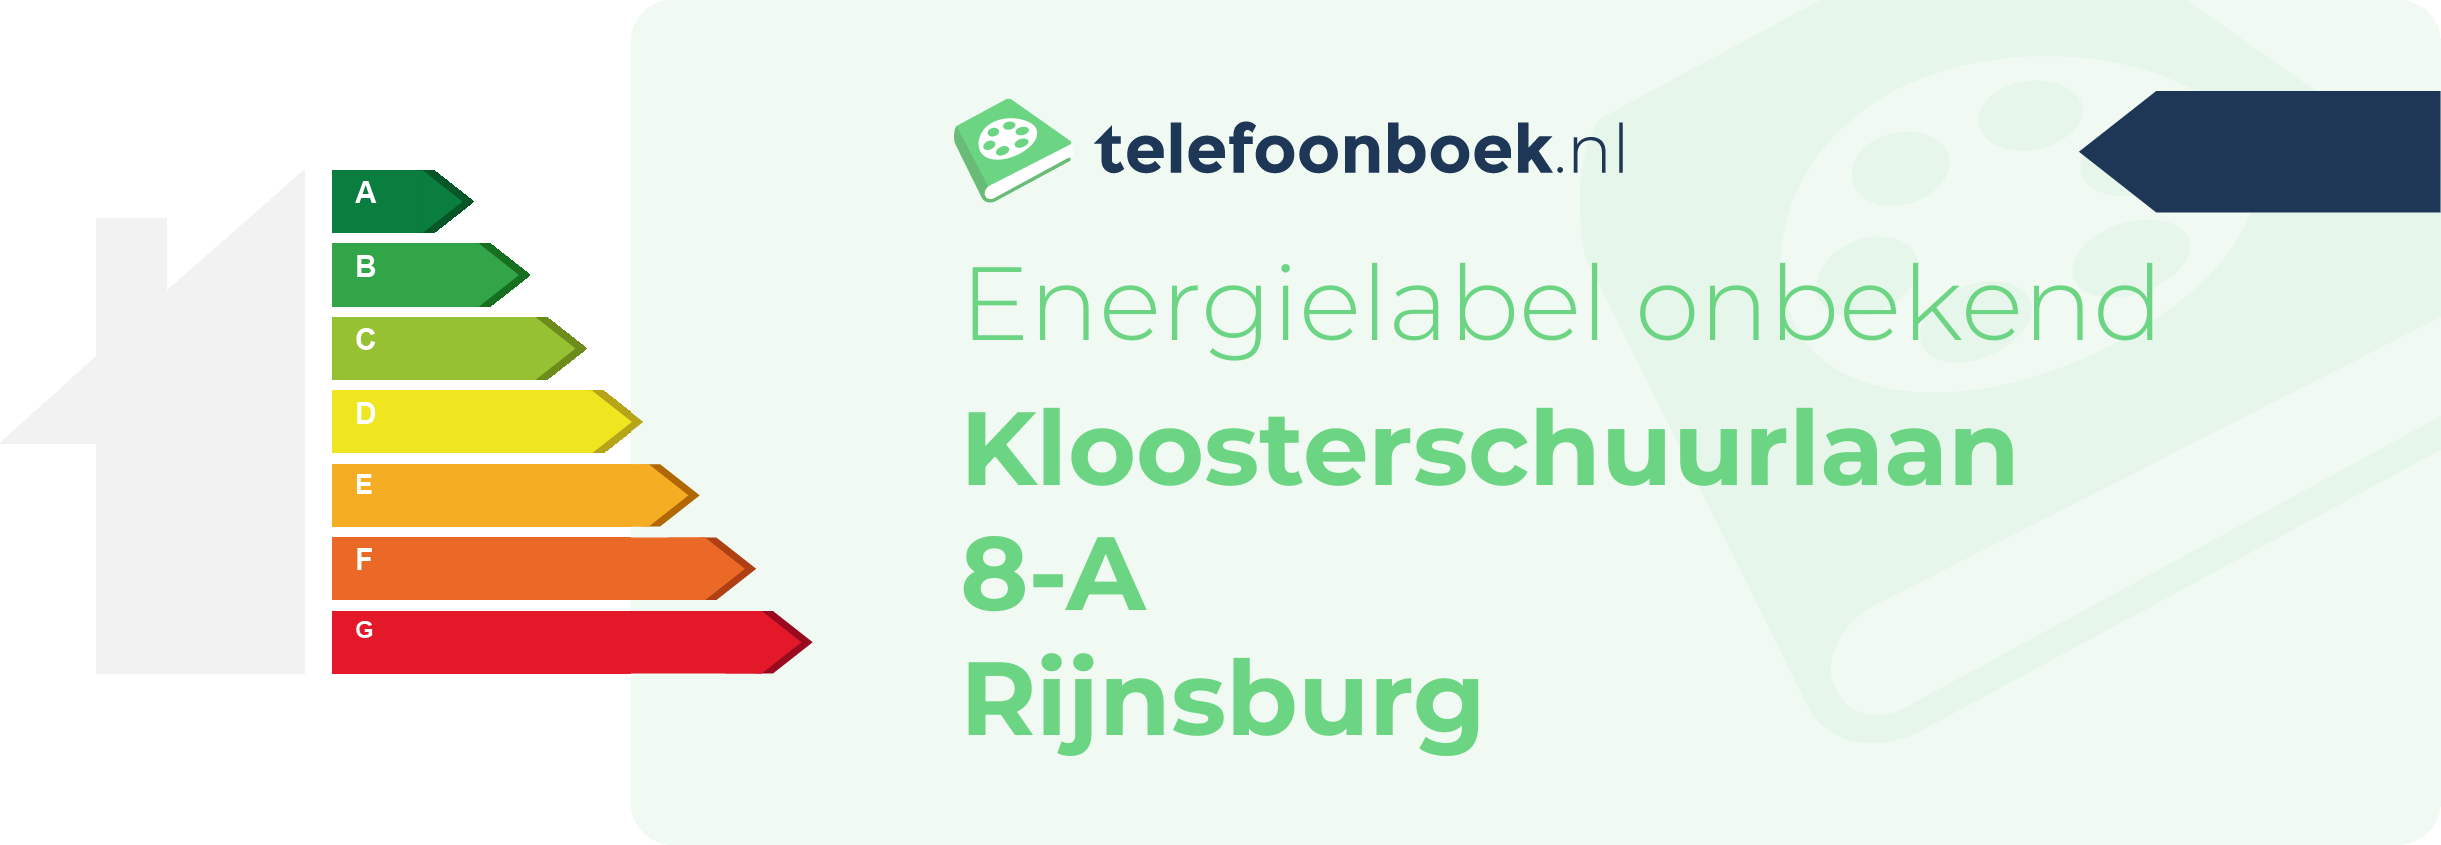 Energielabel Kloosterschuurlaan 8-A Rijnsburg